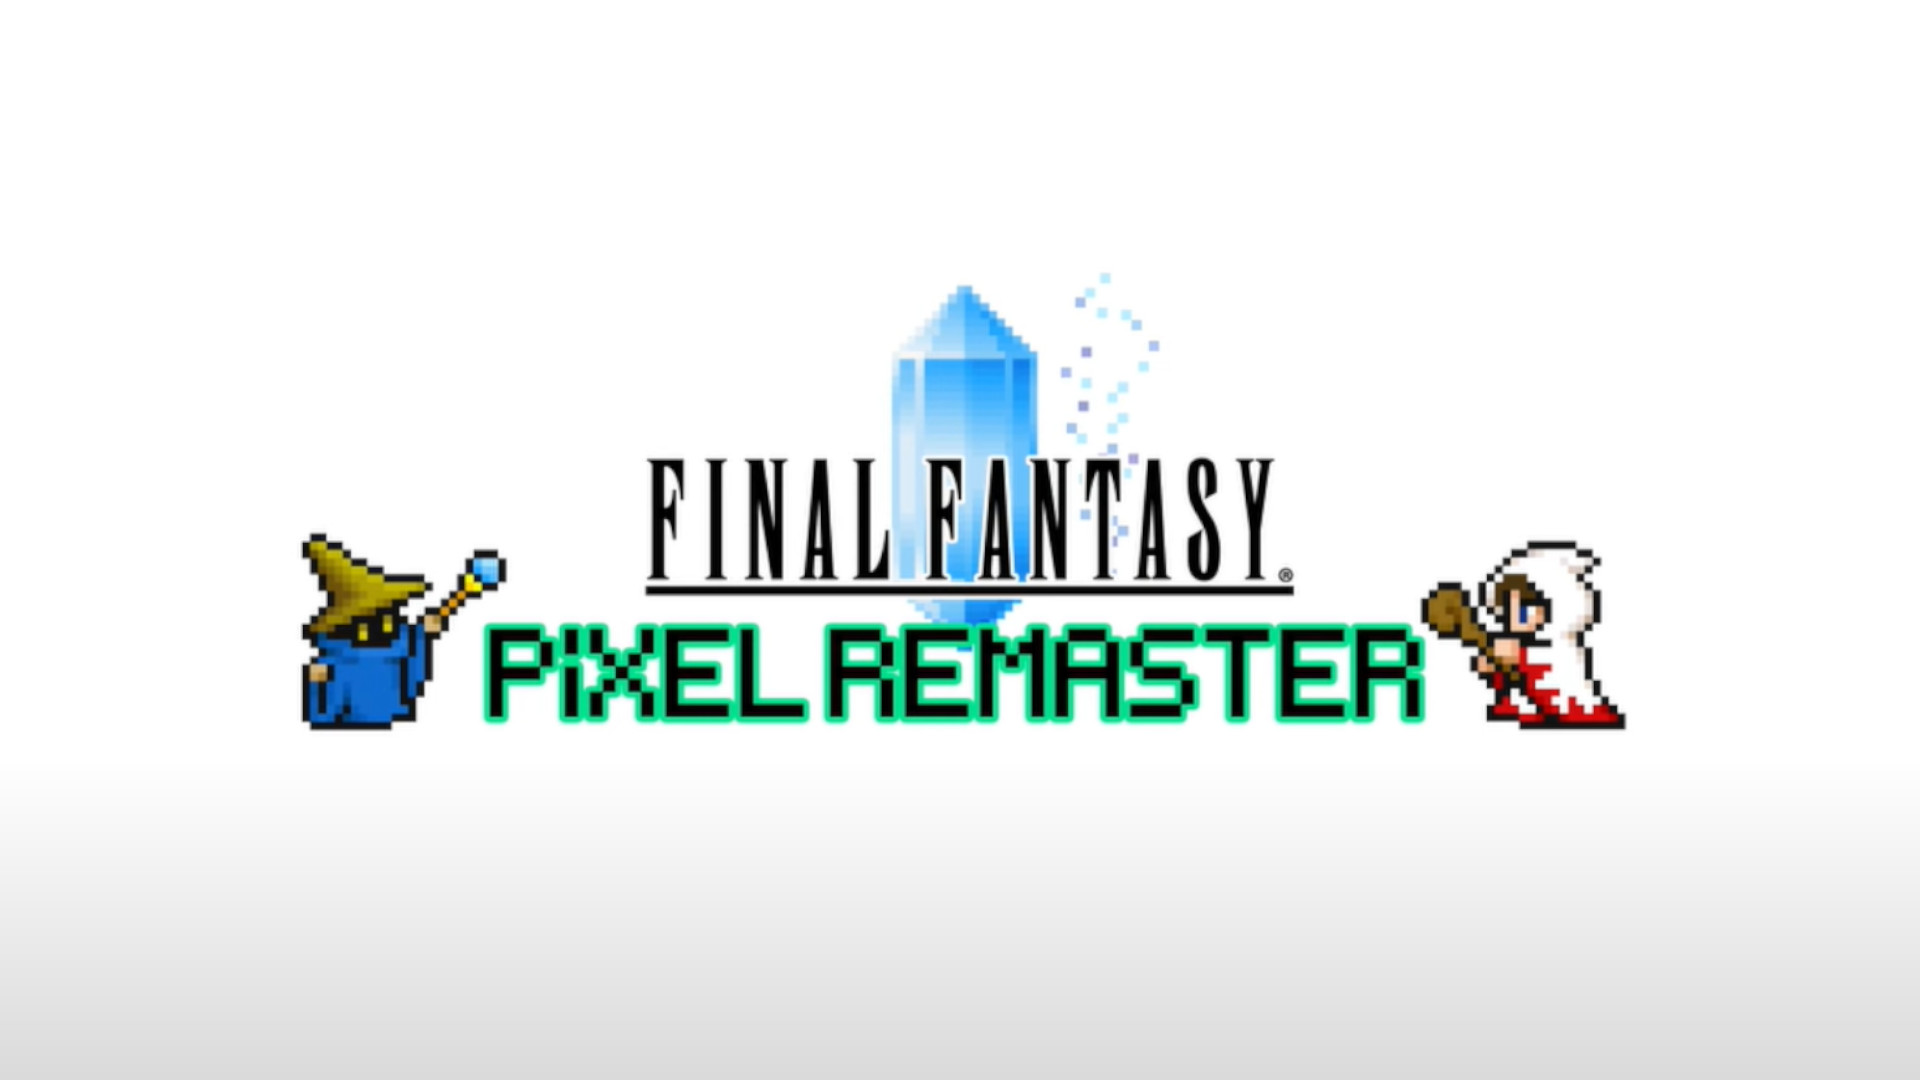 Final Fantasy Pixel Remaster шаш бозии аввалро ба Steam алоҳида меорад